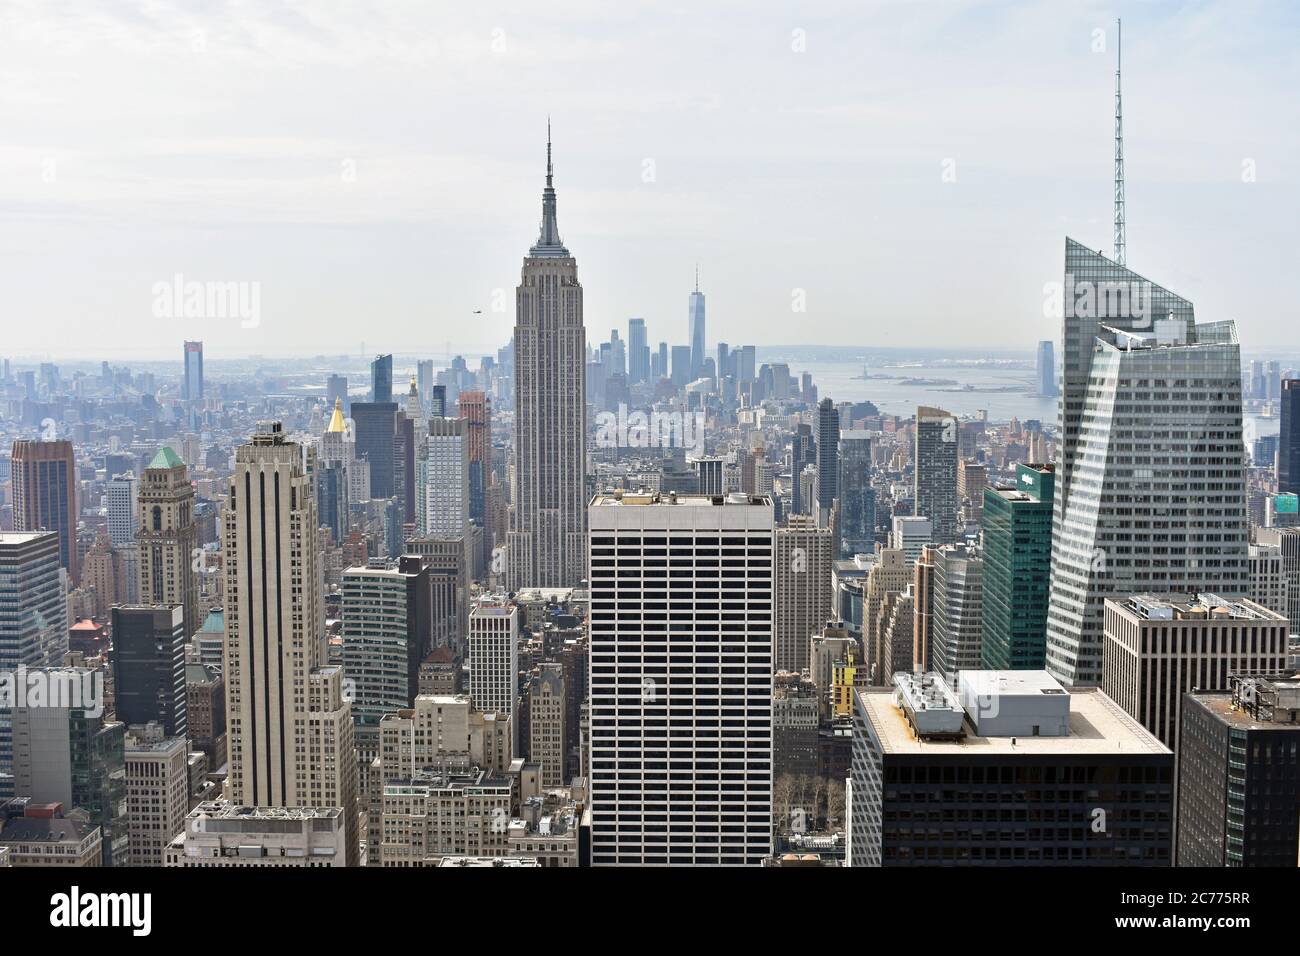 Eine weite Aussicht vom Top of the Rock in New York City mit Blick nach Süden zur Innenstadt, zum World Trade Center & Empire State Building. Wolkenkratzer In Manhattan. Stockfoto